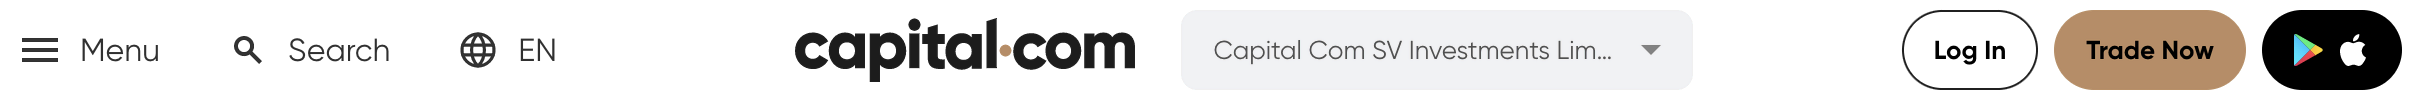 Στο Capital.com μπορείτε να ανοίξετε έναν λογαριασμό κάνοντας κλικ στο "συναλλαγές τώρα" στο επάνω μέρος του ιστότοπου.